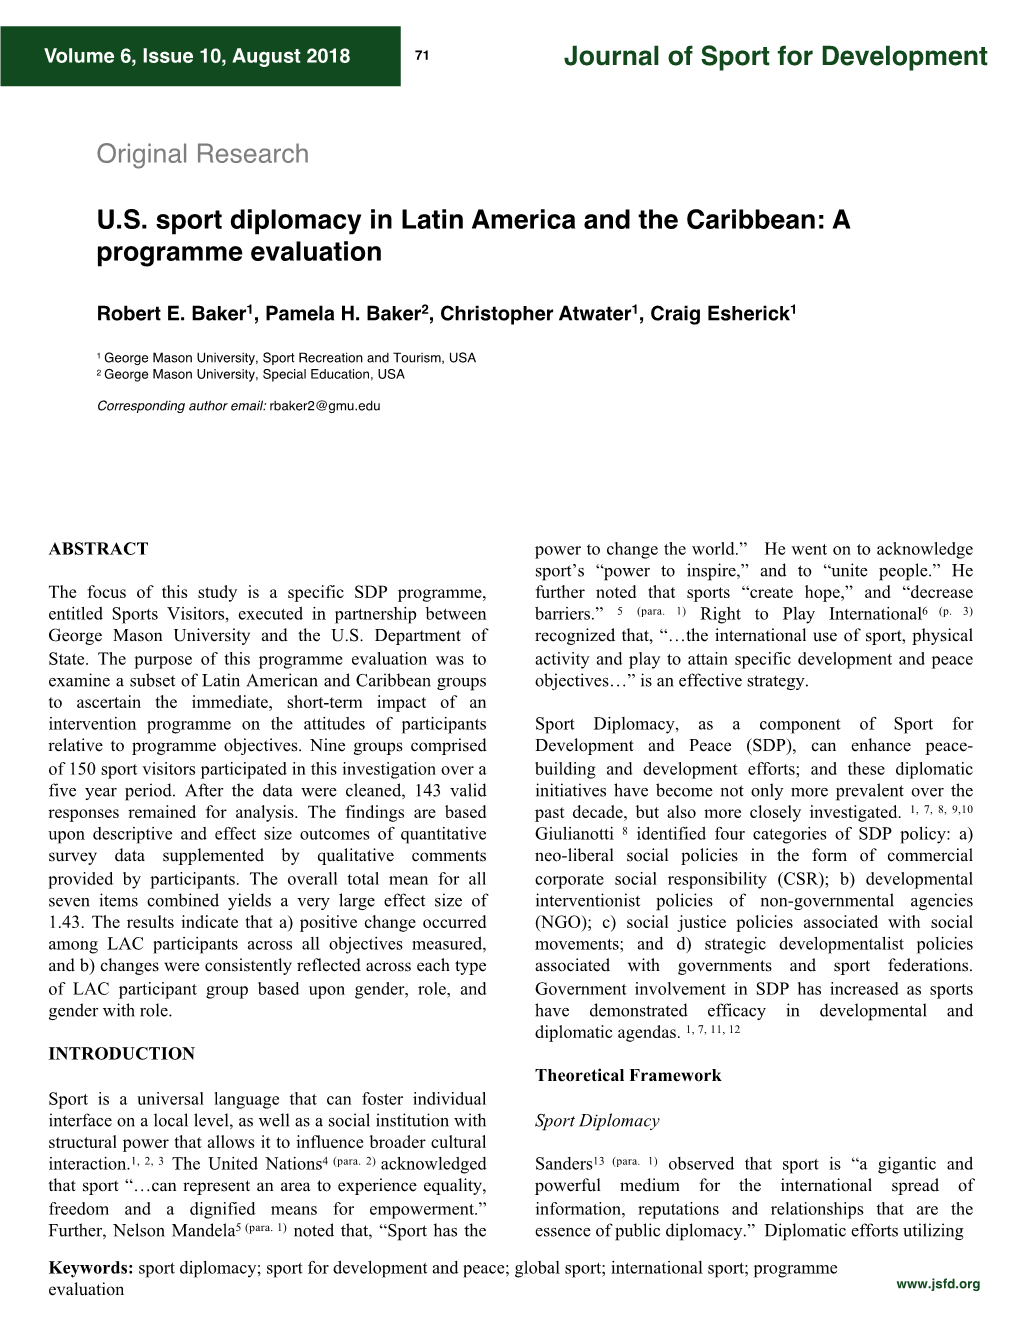 US Sport Diplomacy in Latin America